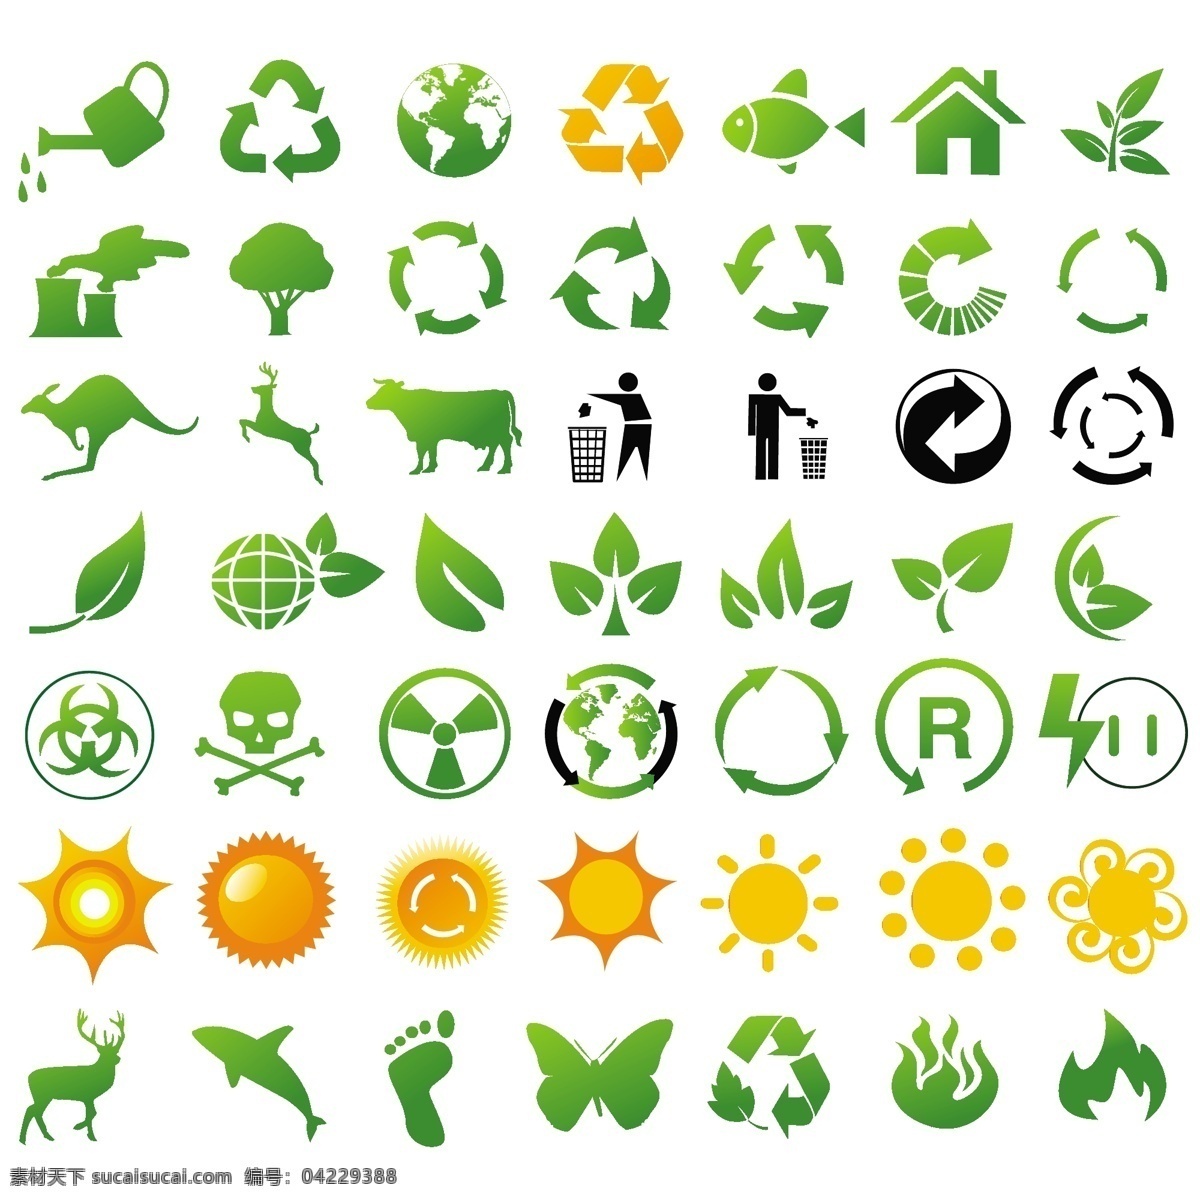 环境 图标 环境的图标 环保 矢量 各种 自由 绿色环保 图标集 其他矢量图